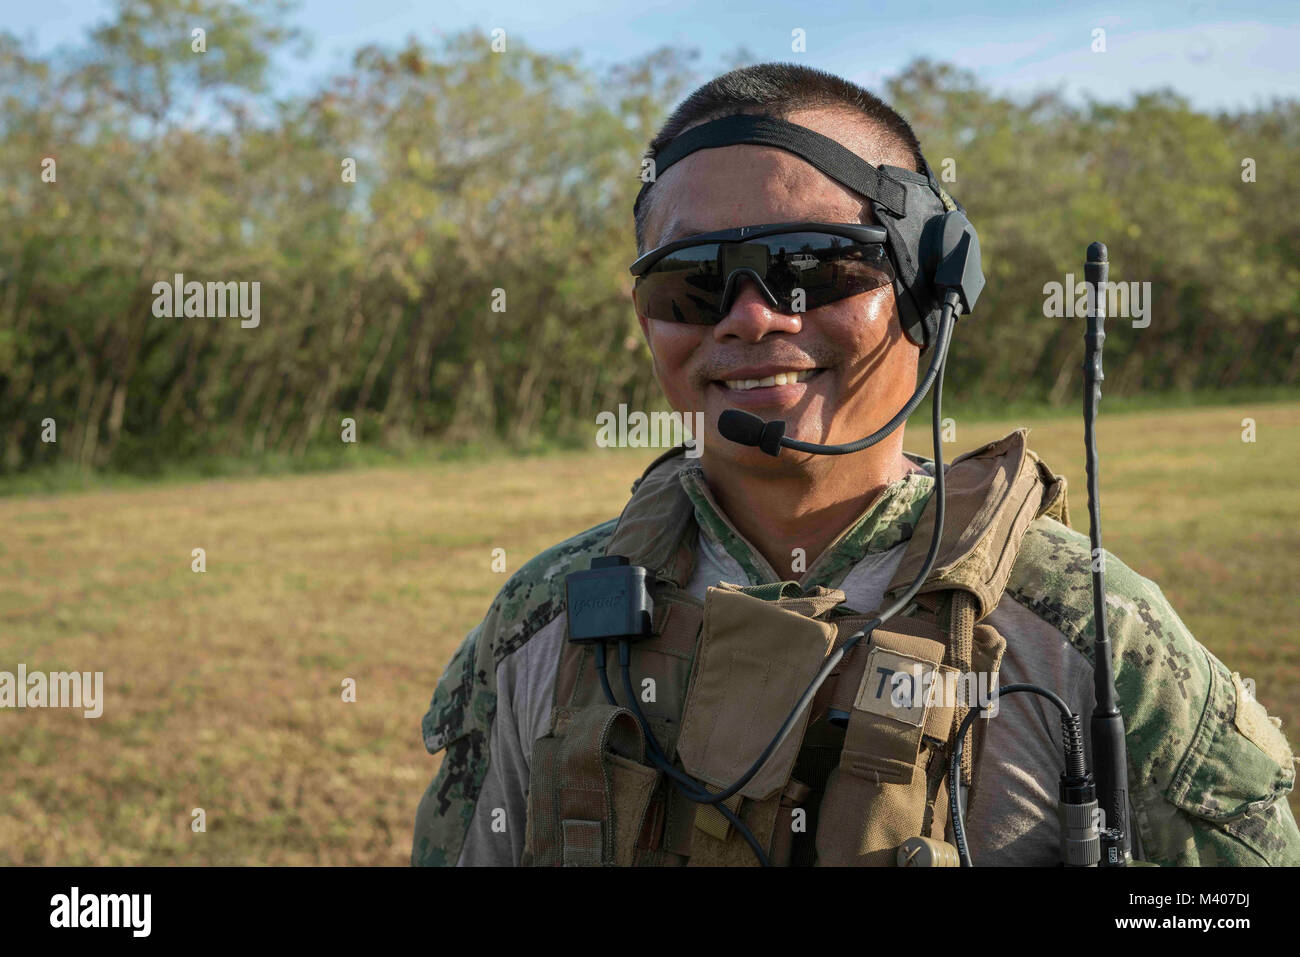 Master-at-Arms 1. Klasse Tho Doan, an die in den Küstenzonen Riverine Group (CRG) 1, Det zugeordnet. Guam, bereitet sich für eine Live-Fire Training am Marinestützpunkt Guam, Feb 7, 2018. Diese vierteljährliche Readiness Training, von der CRG-1 Ausbildungs- und Auswerteeinheit, San Diego gehalten, ermöglicht CRG-1 Det. Guam 360-Punkt Verteidigung, laufende und in-Port an Bord benannten hohen Wert. CRG-1 Det. Guam ist zum Kommandanten, Task Force 75, die primäre Expeditionary task force verantwortlich für die Planung und Ausführung der Küstengebiete Riverine operations, Beseitigung von Explosivstoffen, Tauchen und Engineering zugeordnet. c Stockfoto